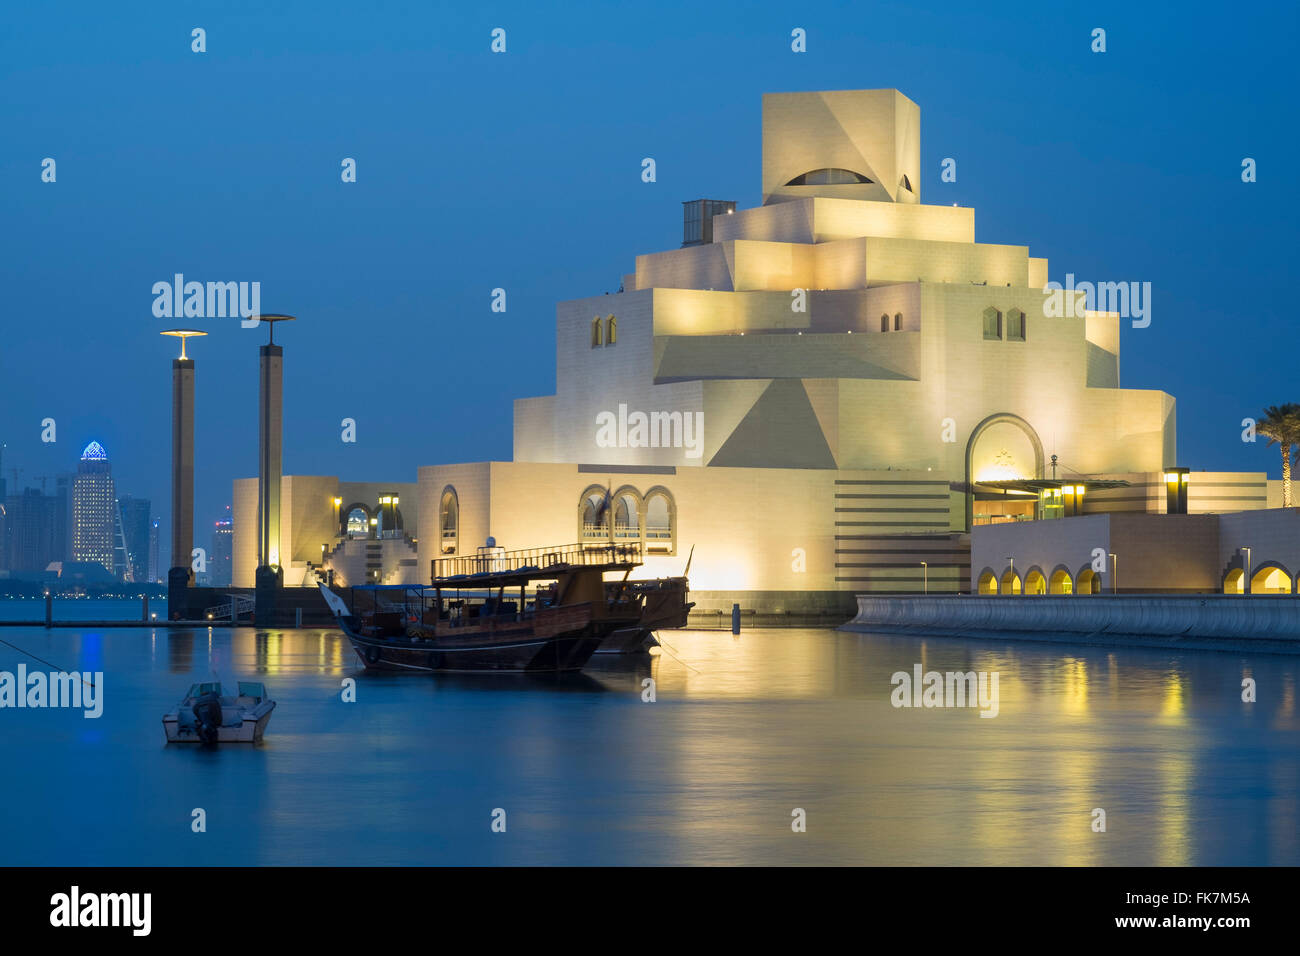 Evening view of illuminated Museum of Islamic Art in Doha Qatar Stock Photo